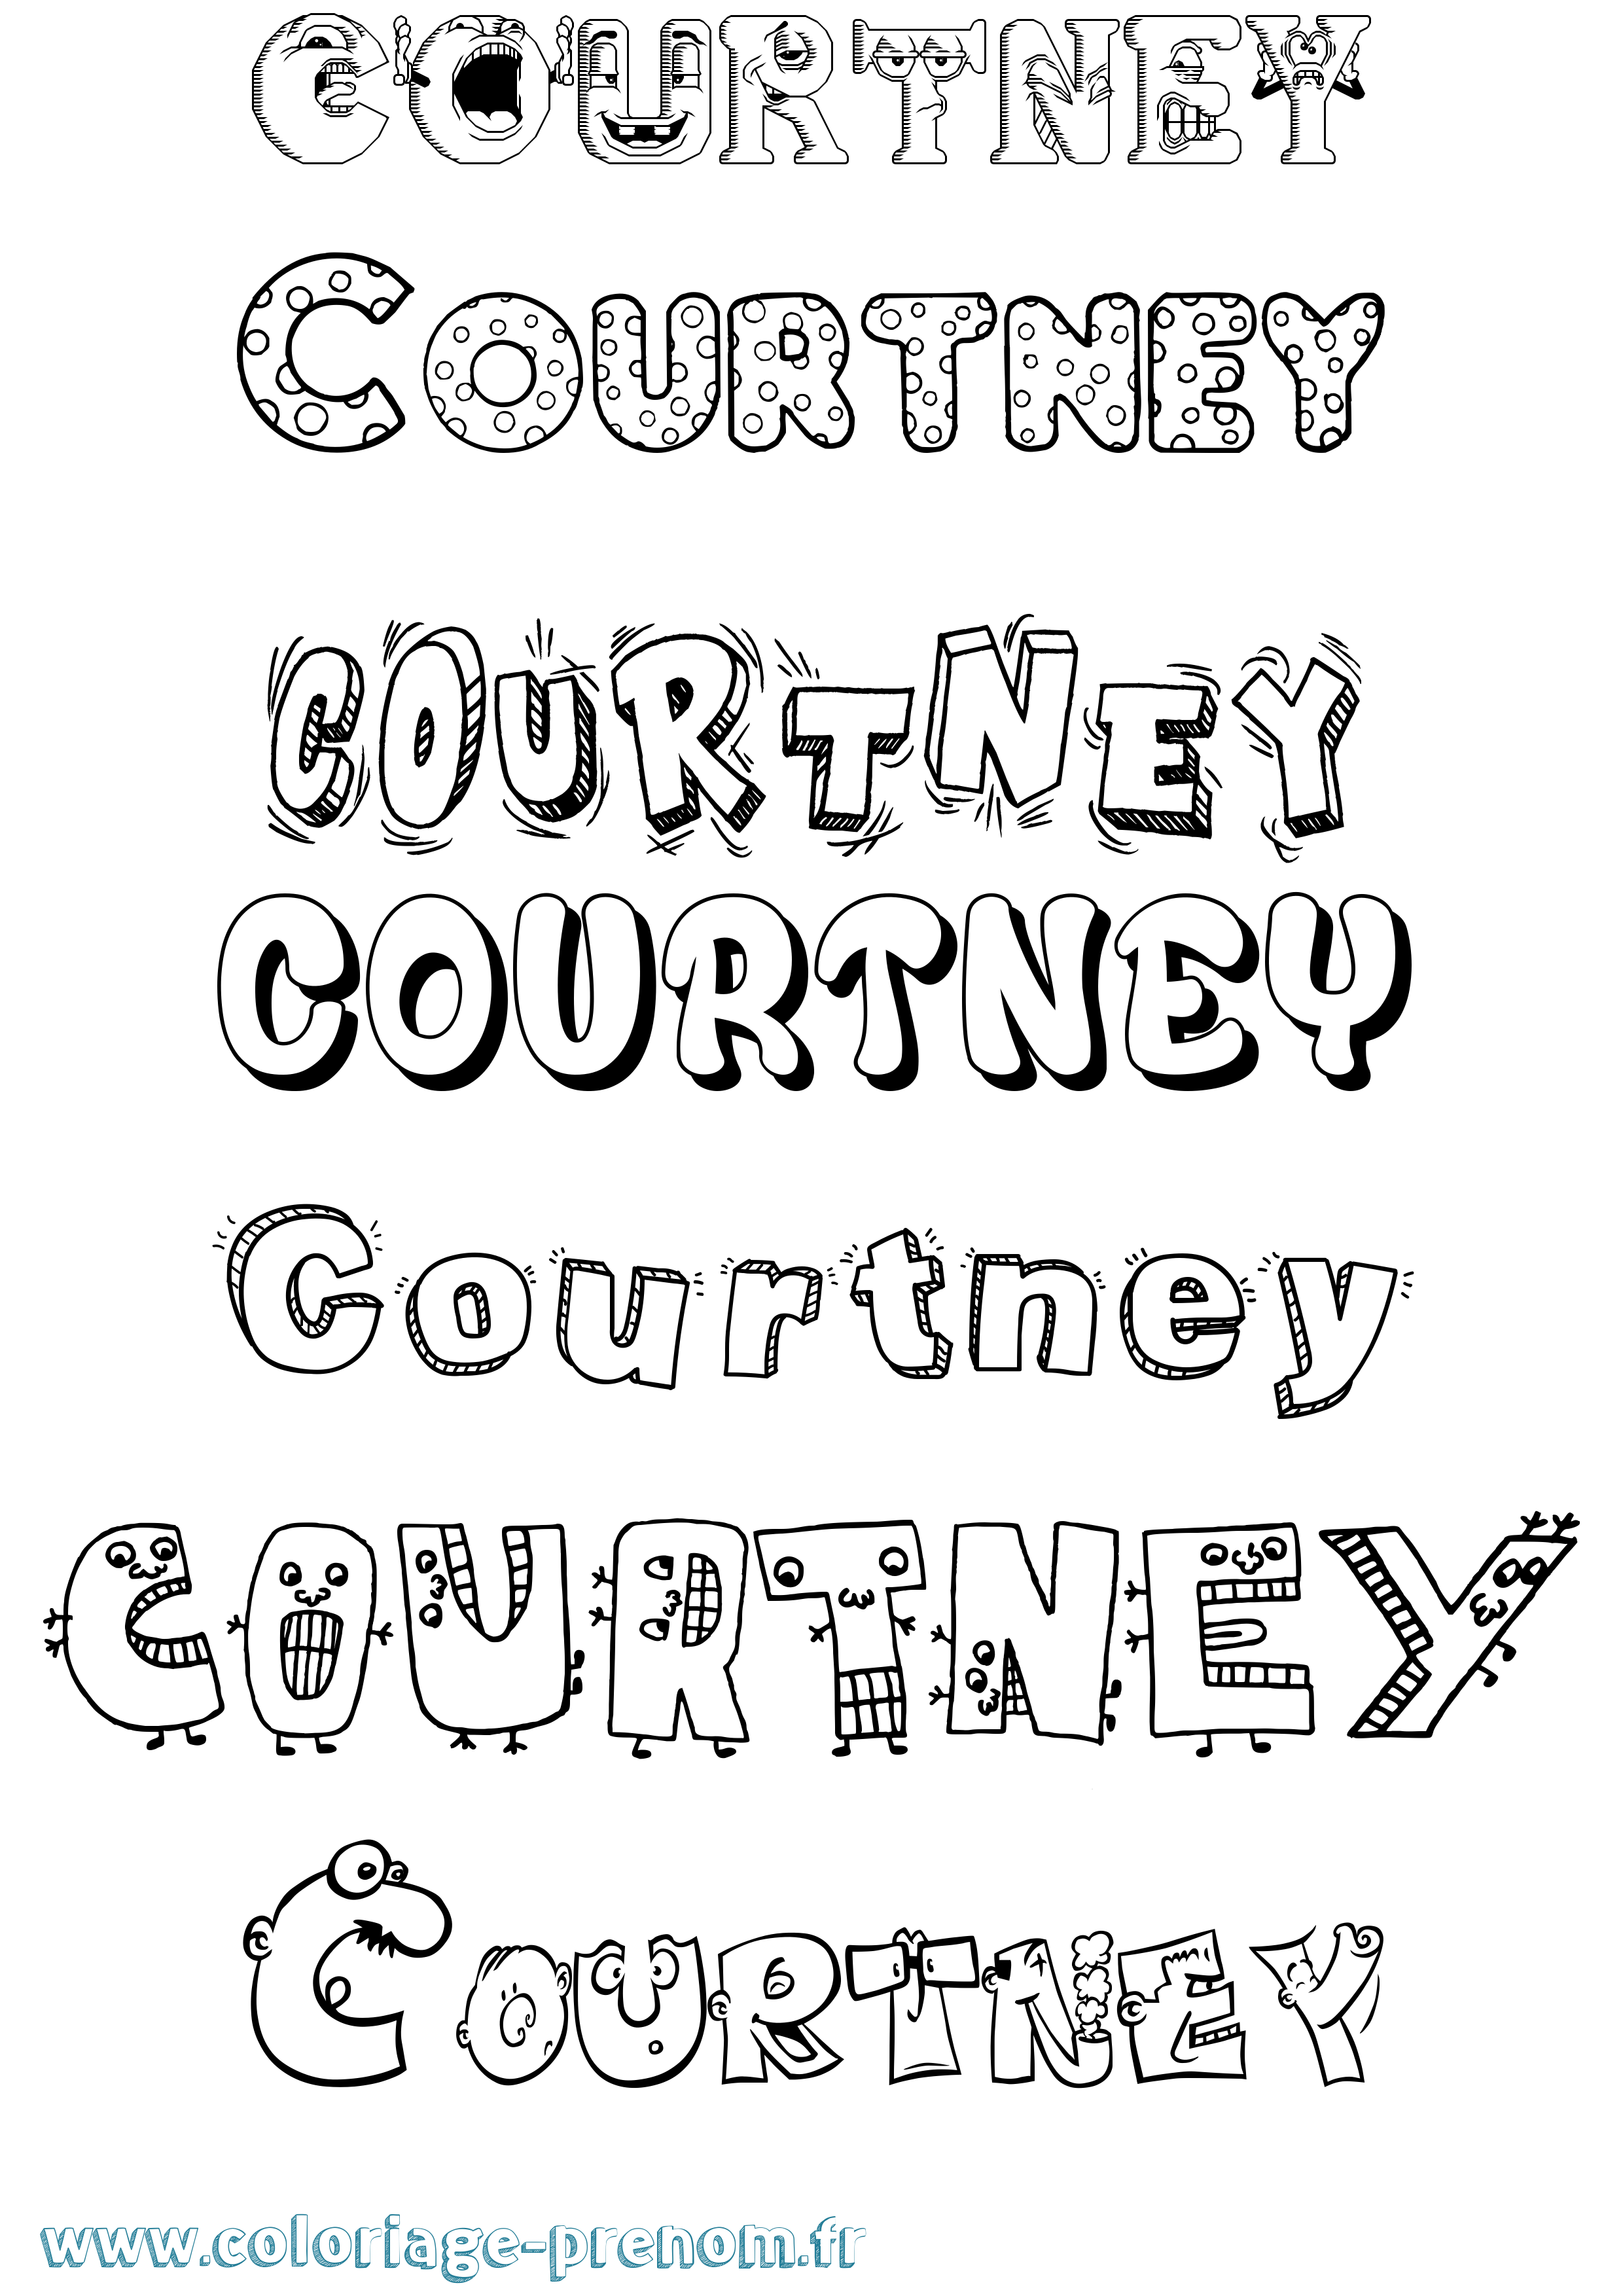 Coloriage prénom Courtney Fun